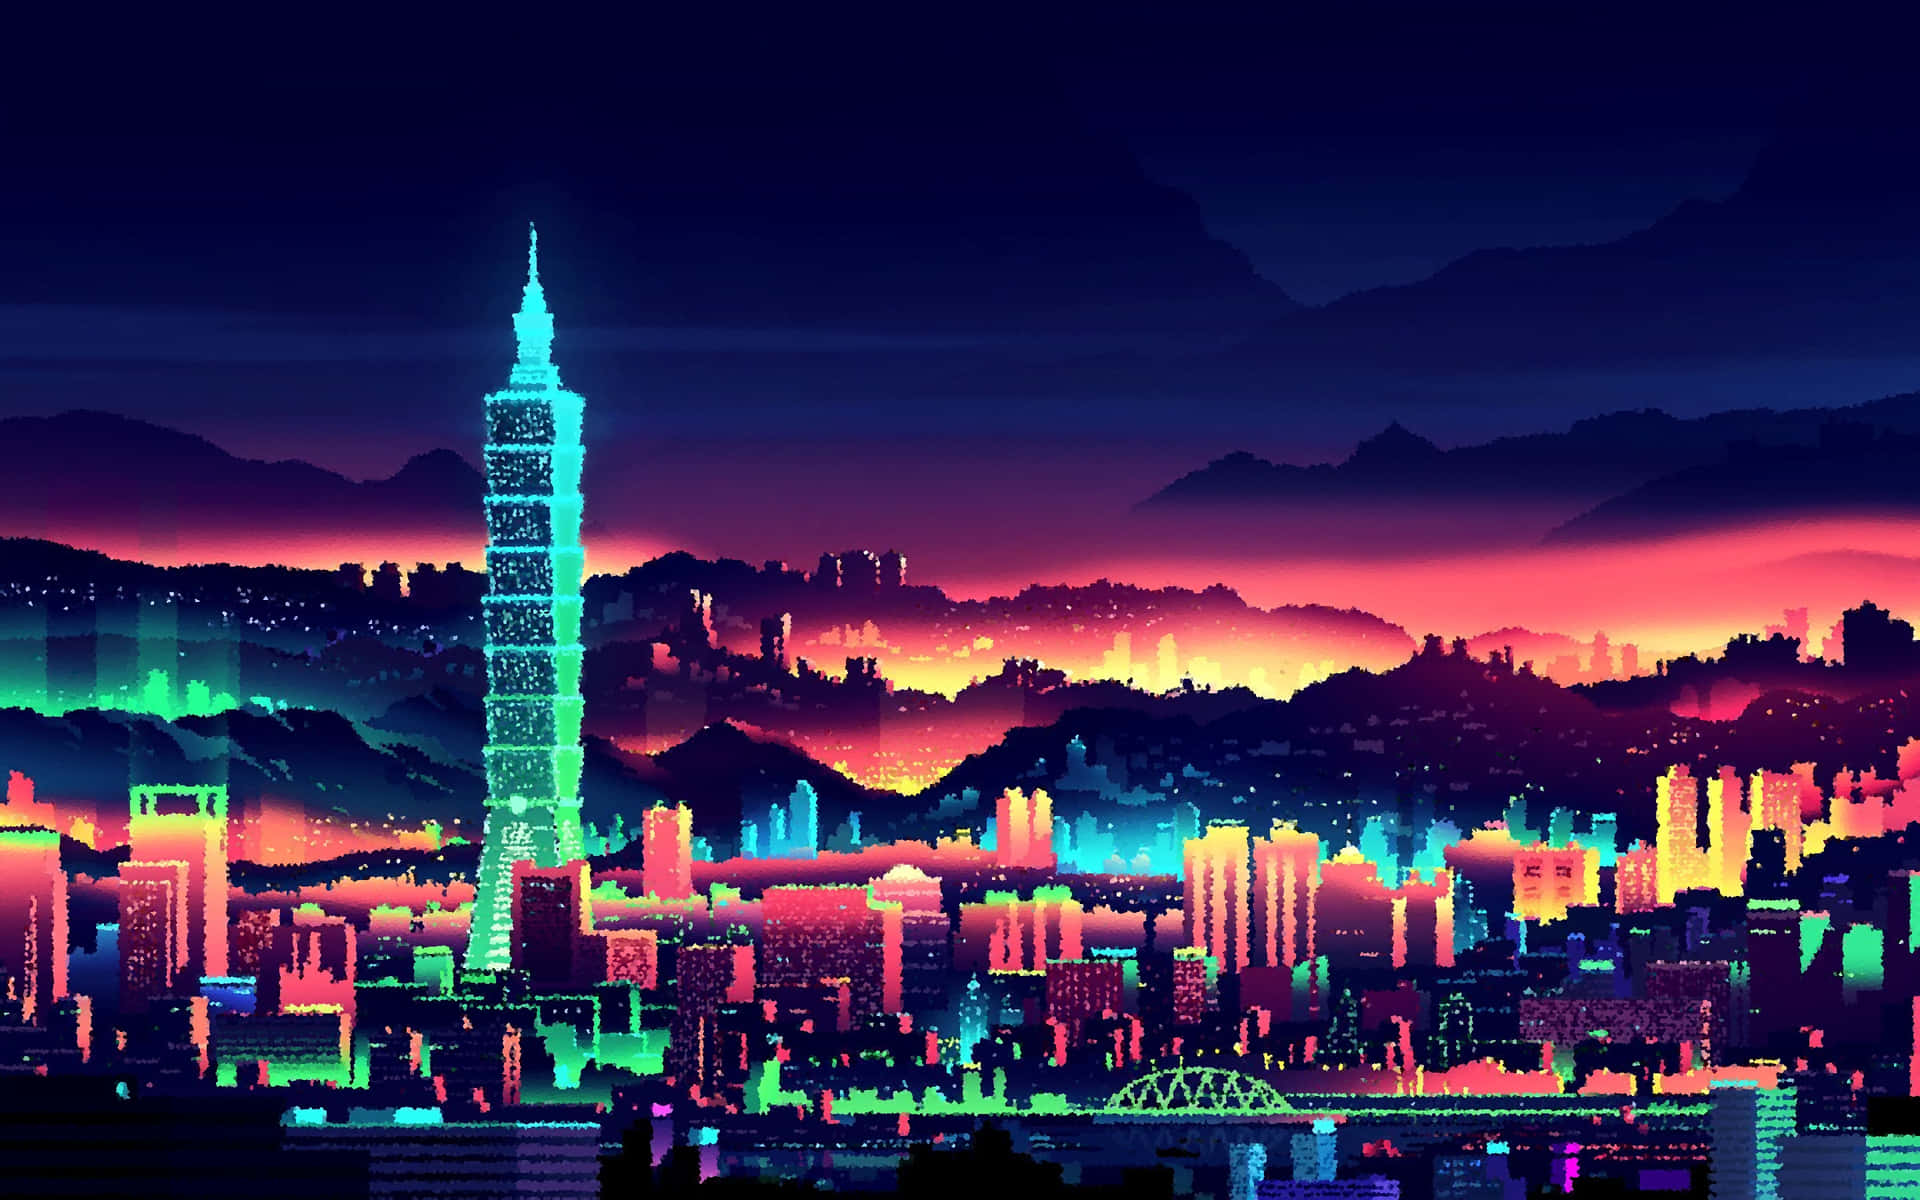 A Cyberpunk Future, Depicted In 8-bit Art Background